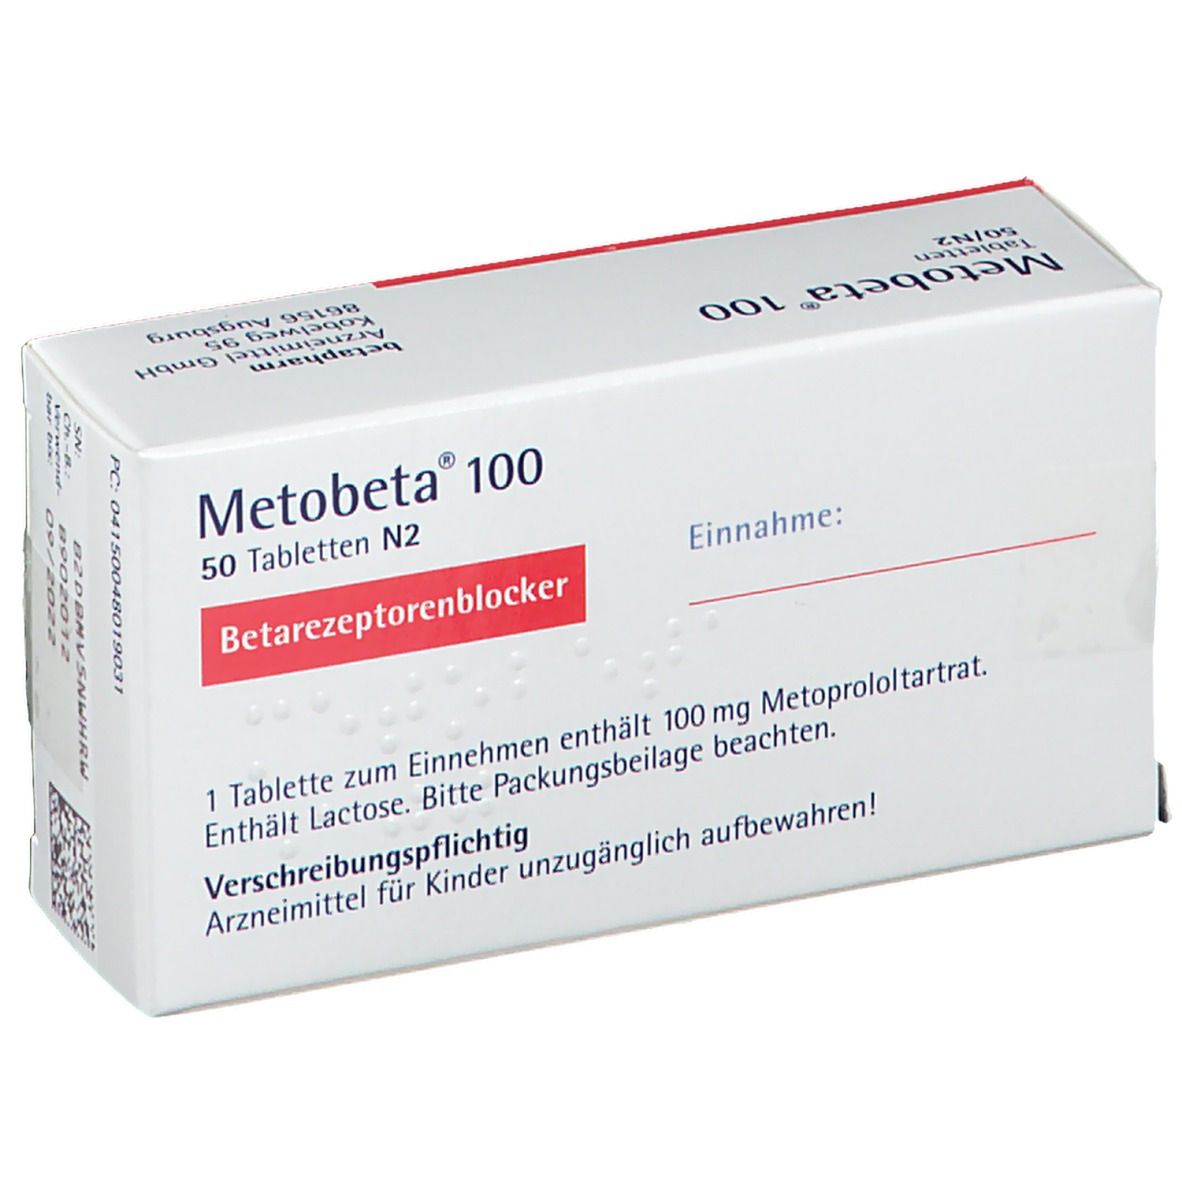 Metobeta® 100